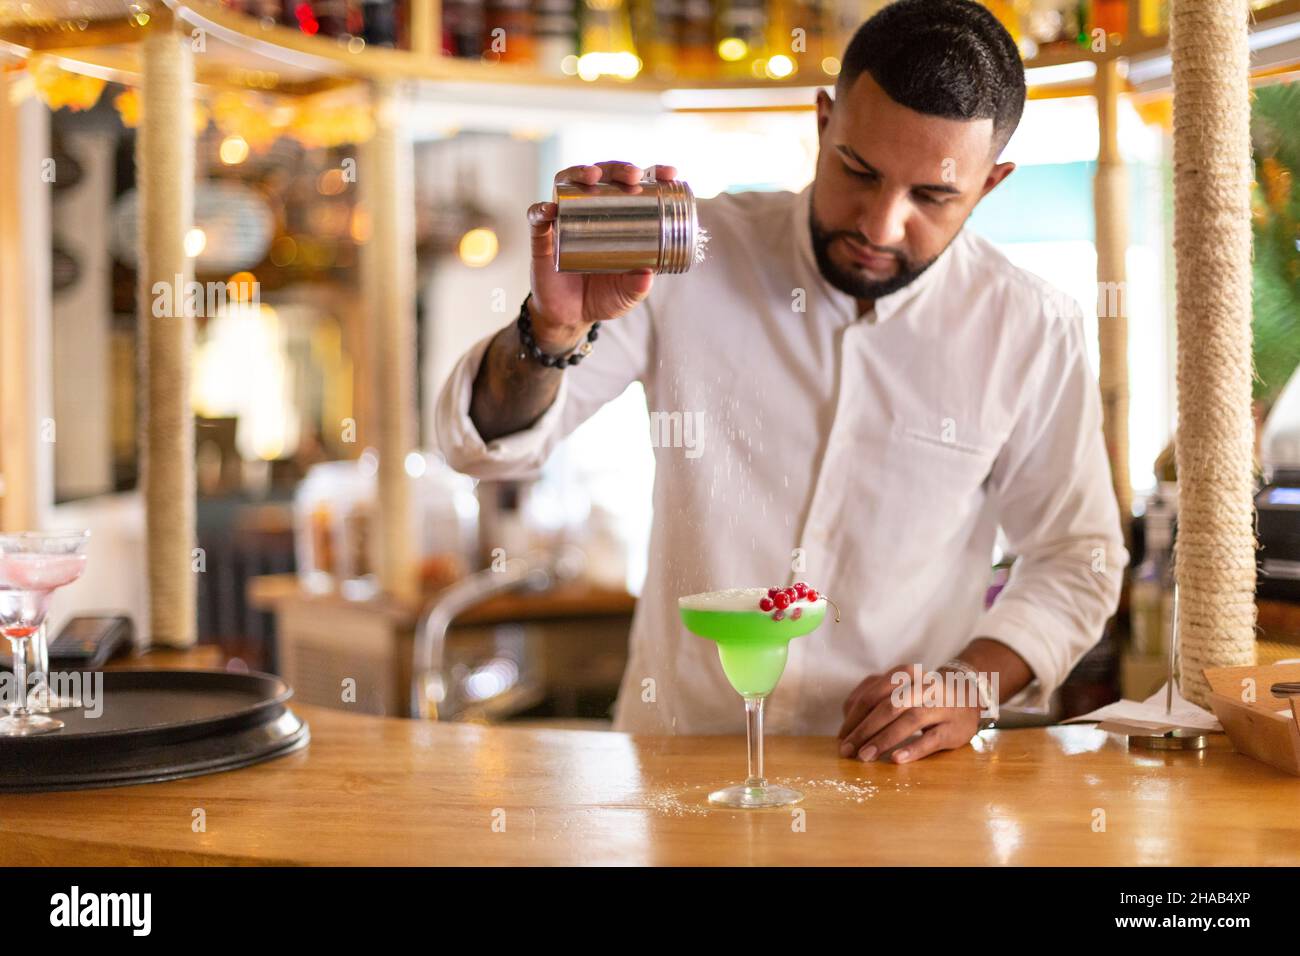 Un jeune latino prépare avec soin une boisson alcoolisée dans un bar à cocktails moderne.Espace pour le texte.Mise au point sélective. Banque D'Images